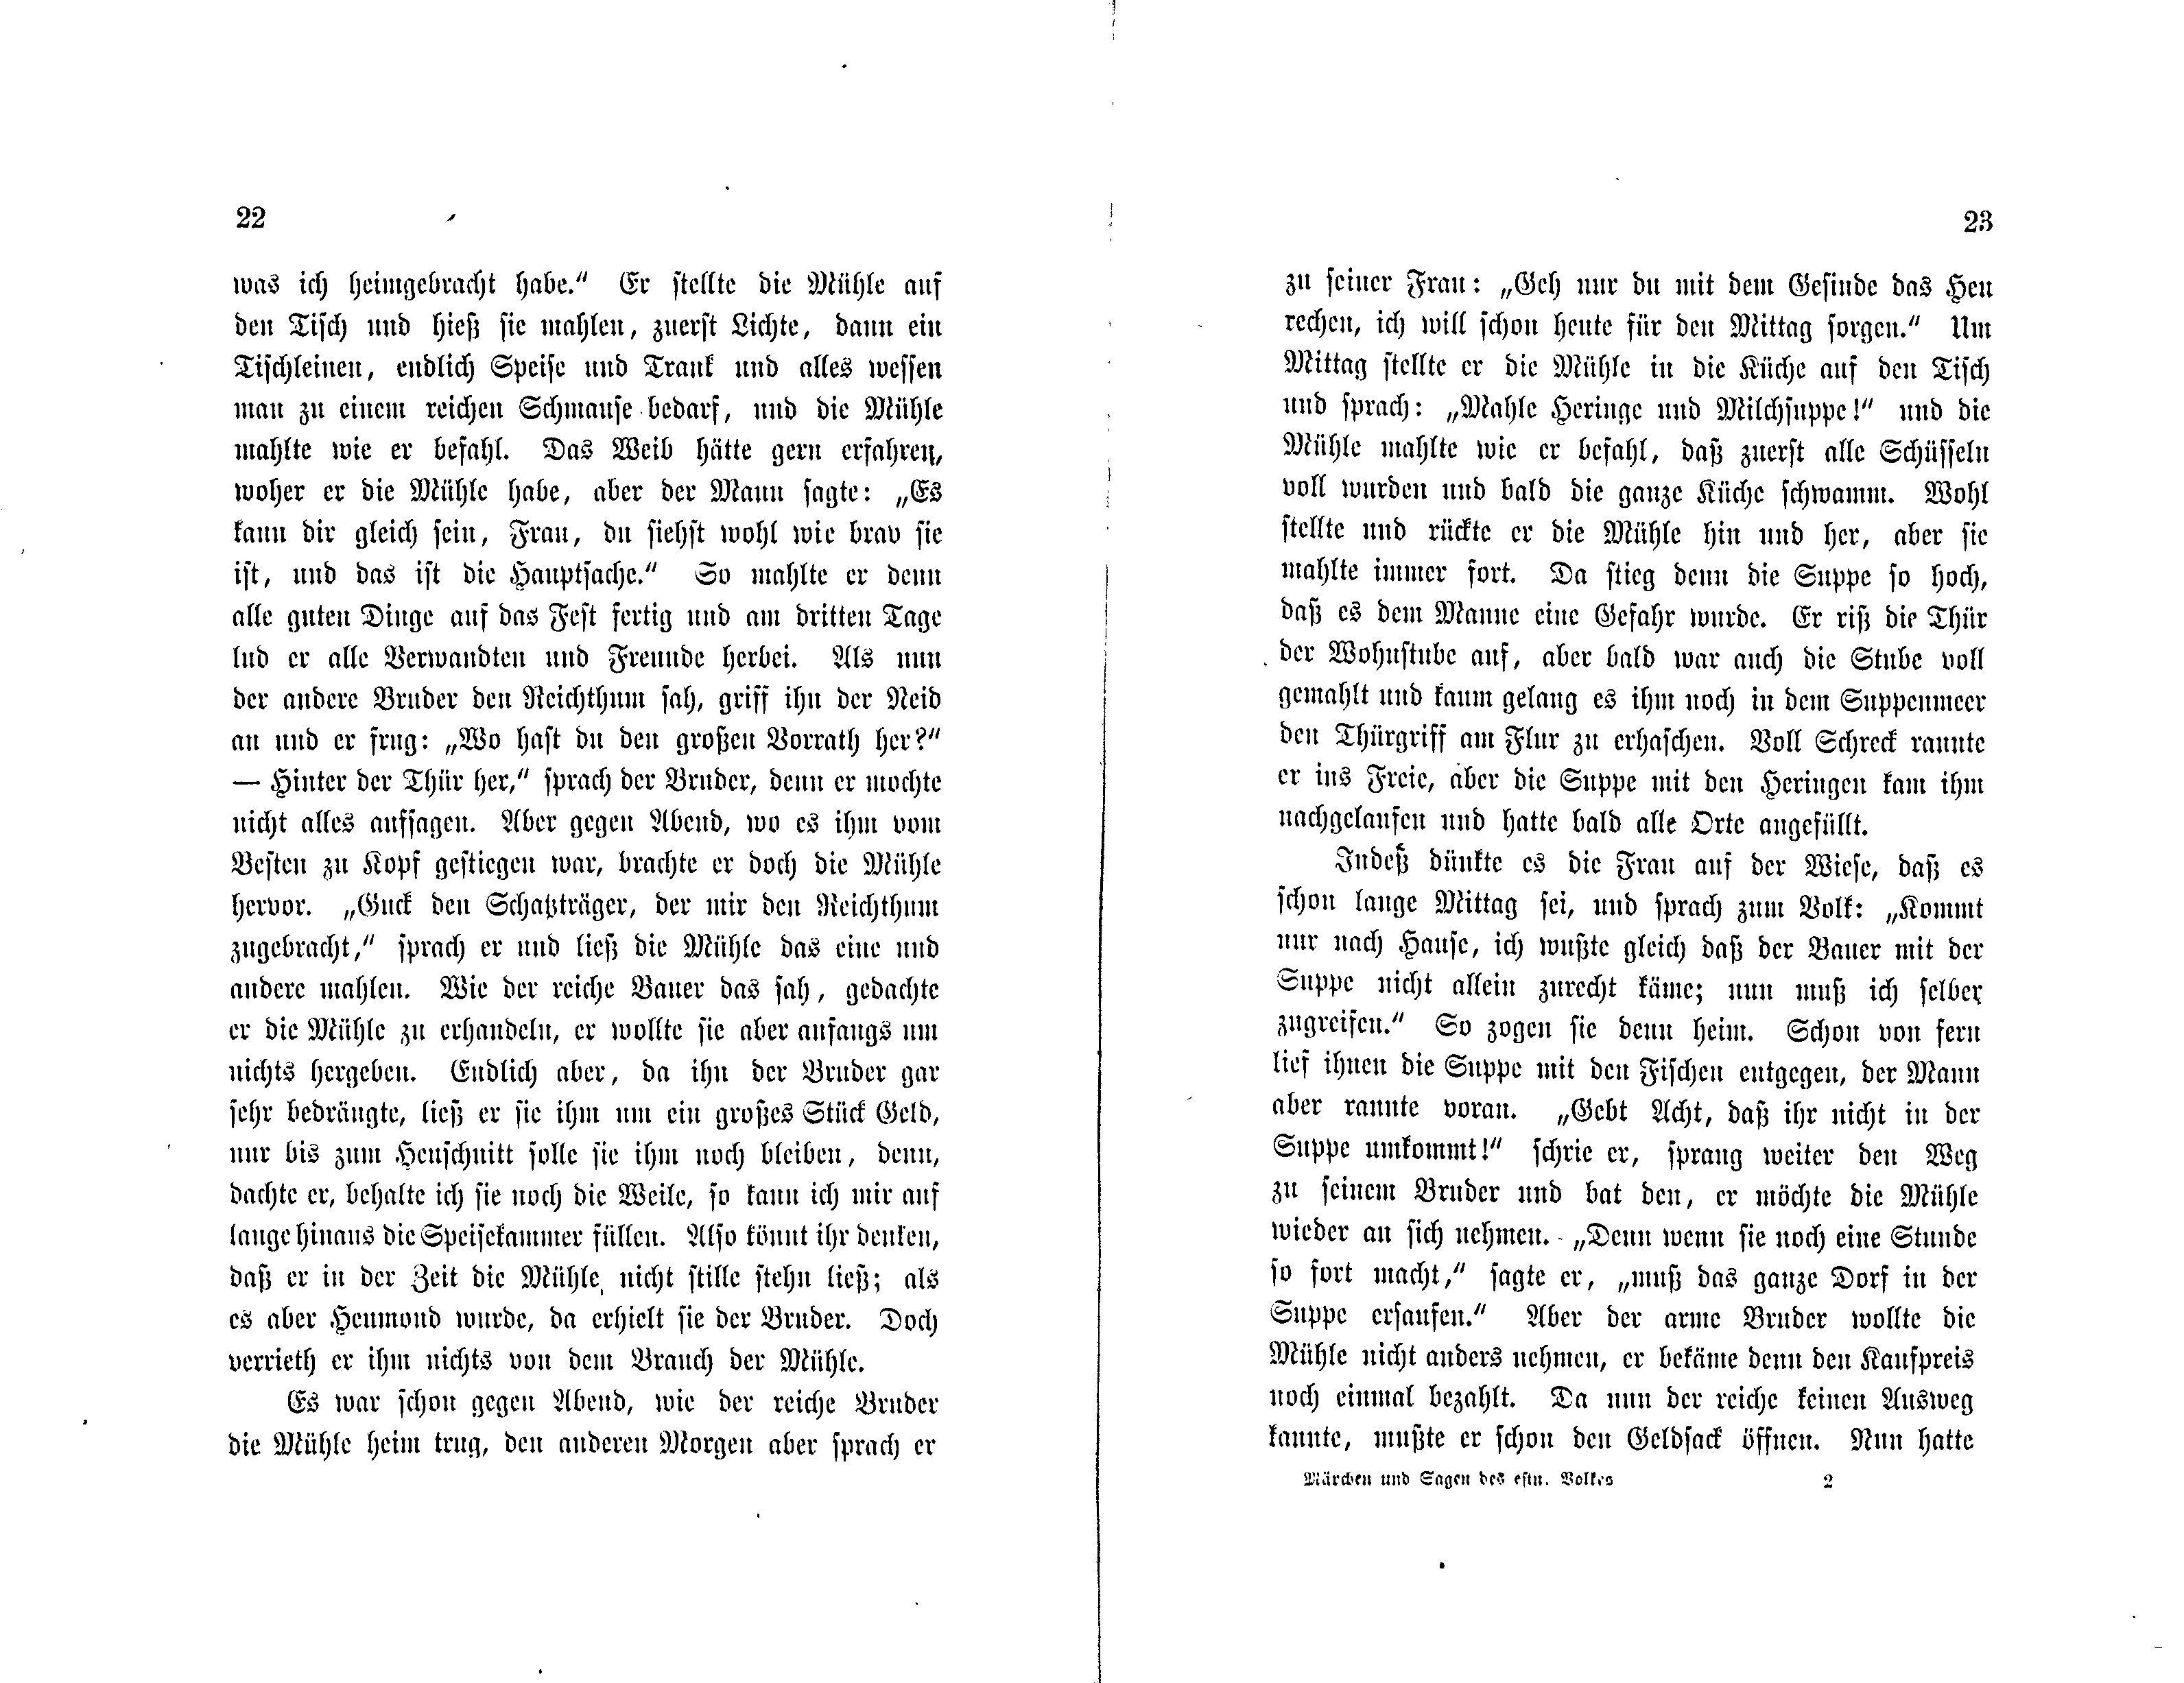 Märchen und Sagen des estnischen Volkes [1] (1881) | 13. (22-23) Main body of text